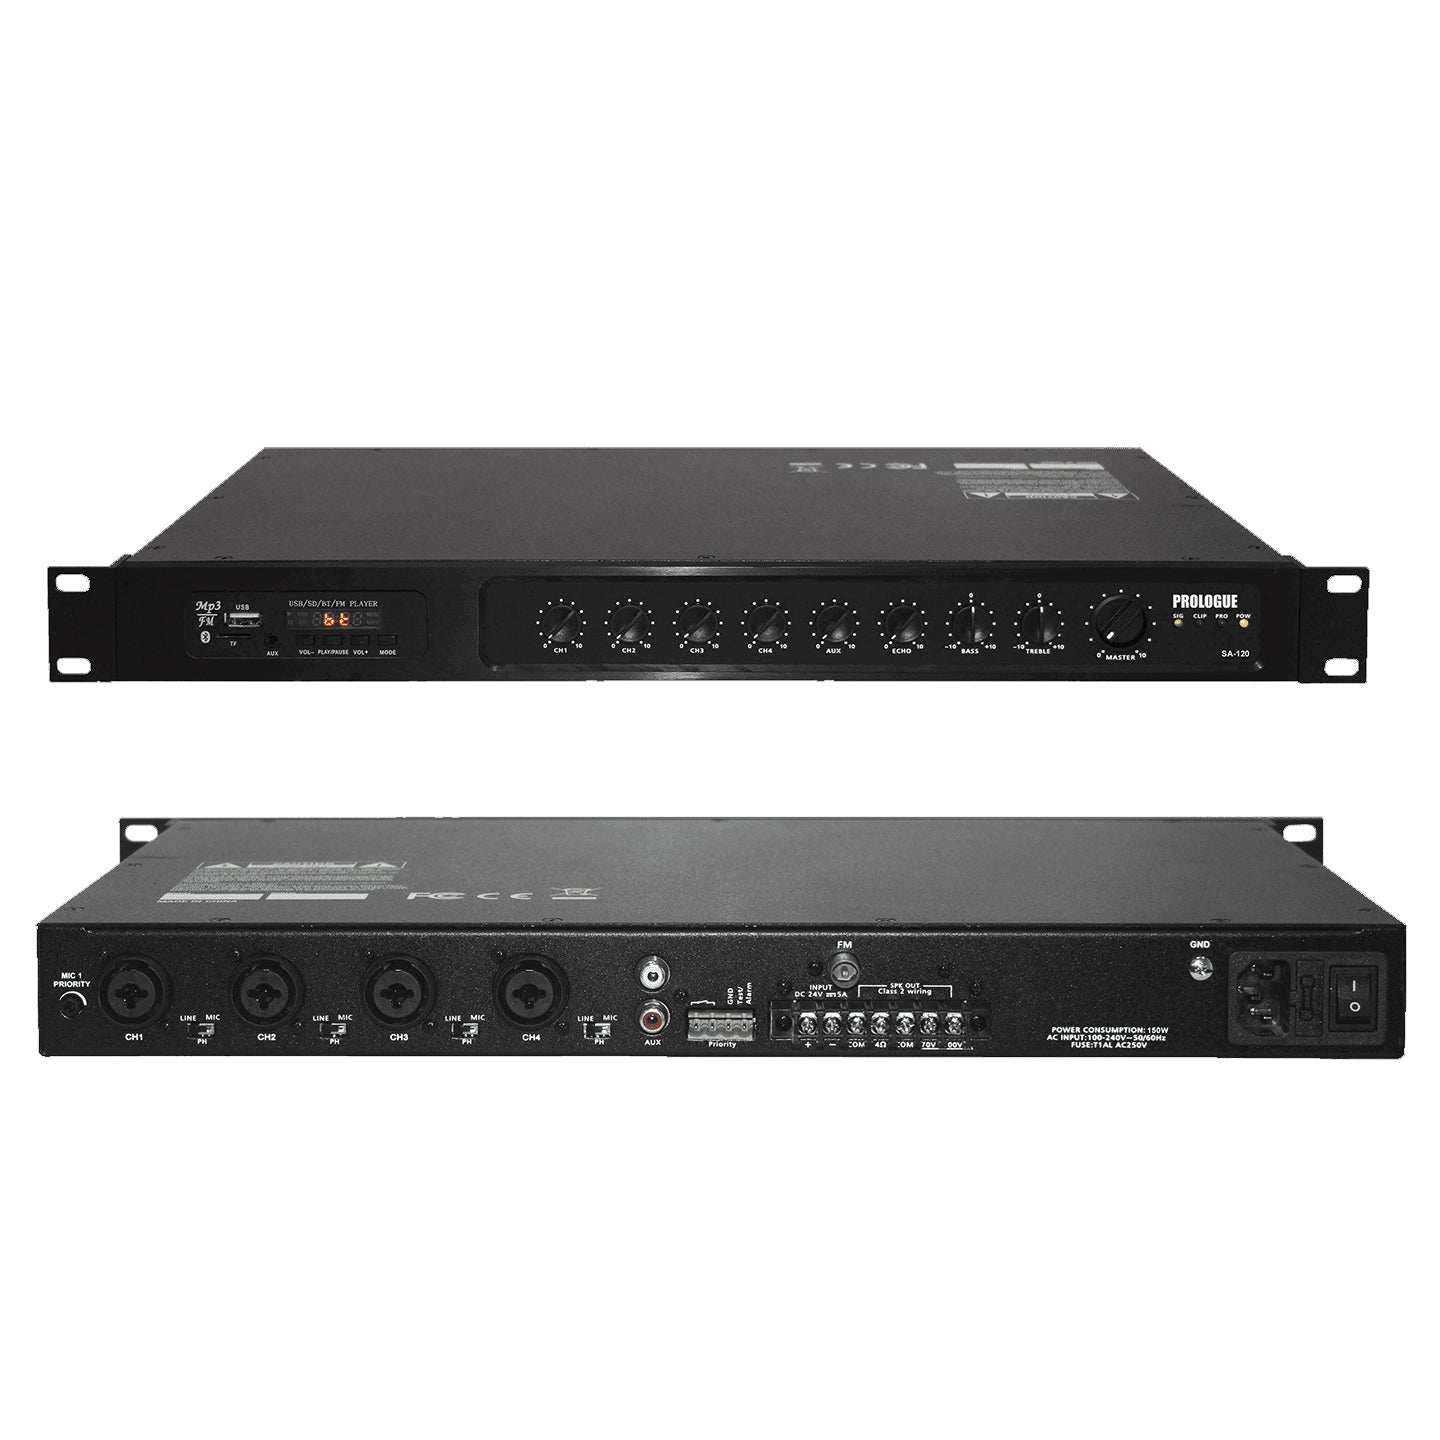 Prologue SA-120 - Amplificateur Mono 120W RMS, Sorties 70V et 8 ohms, 4 Entrées Micro/ligne, 1 entrée AUX stéréo, lecteur MP3 USB-SD, Tuner, Bluetooth, 1U